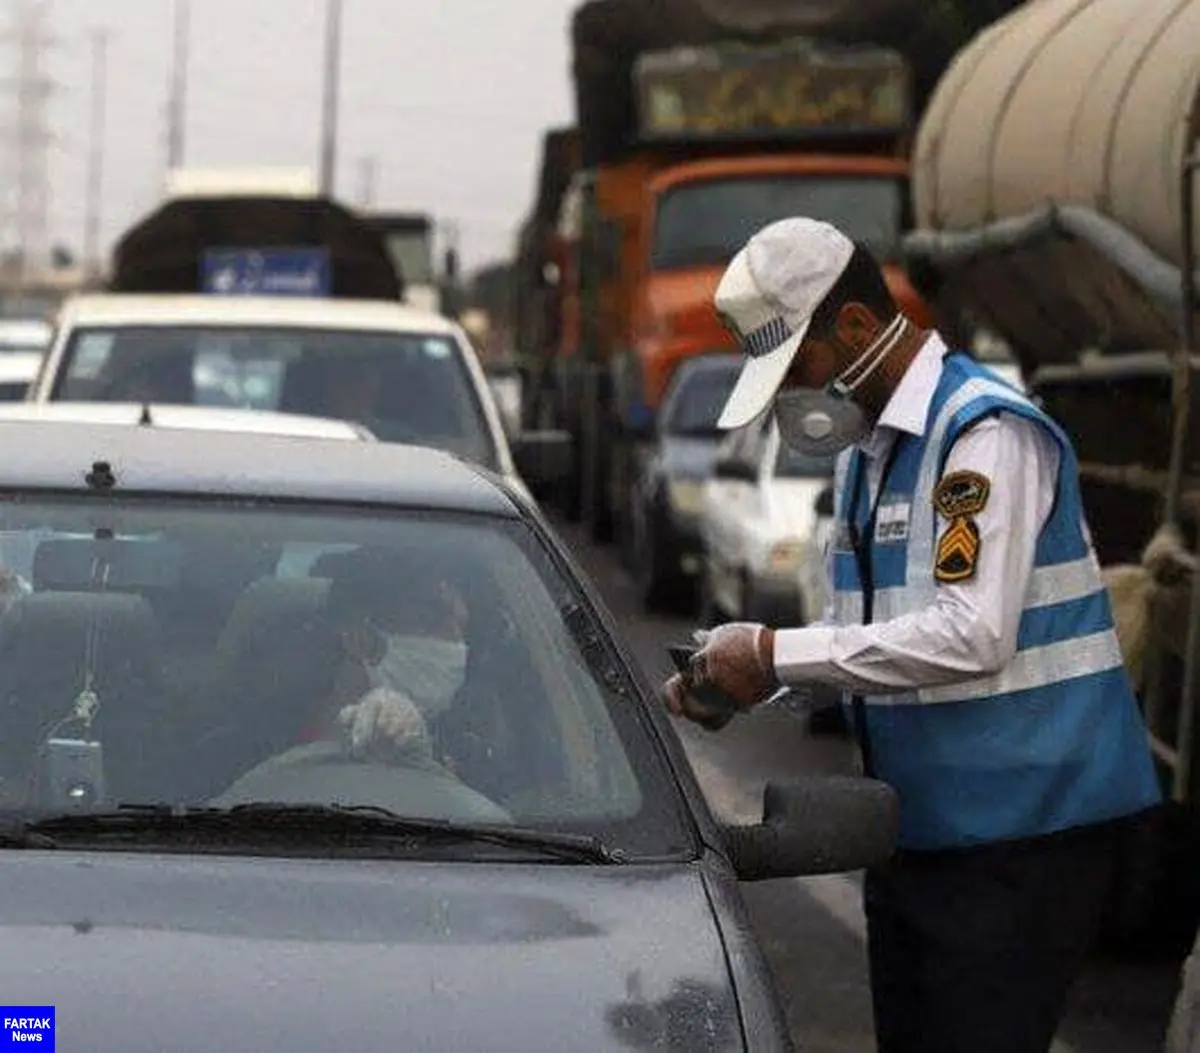 ‍ محدودیت ترافیکی روز ۱۲ بهمن در کرمانشاه اعمال می شود